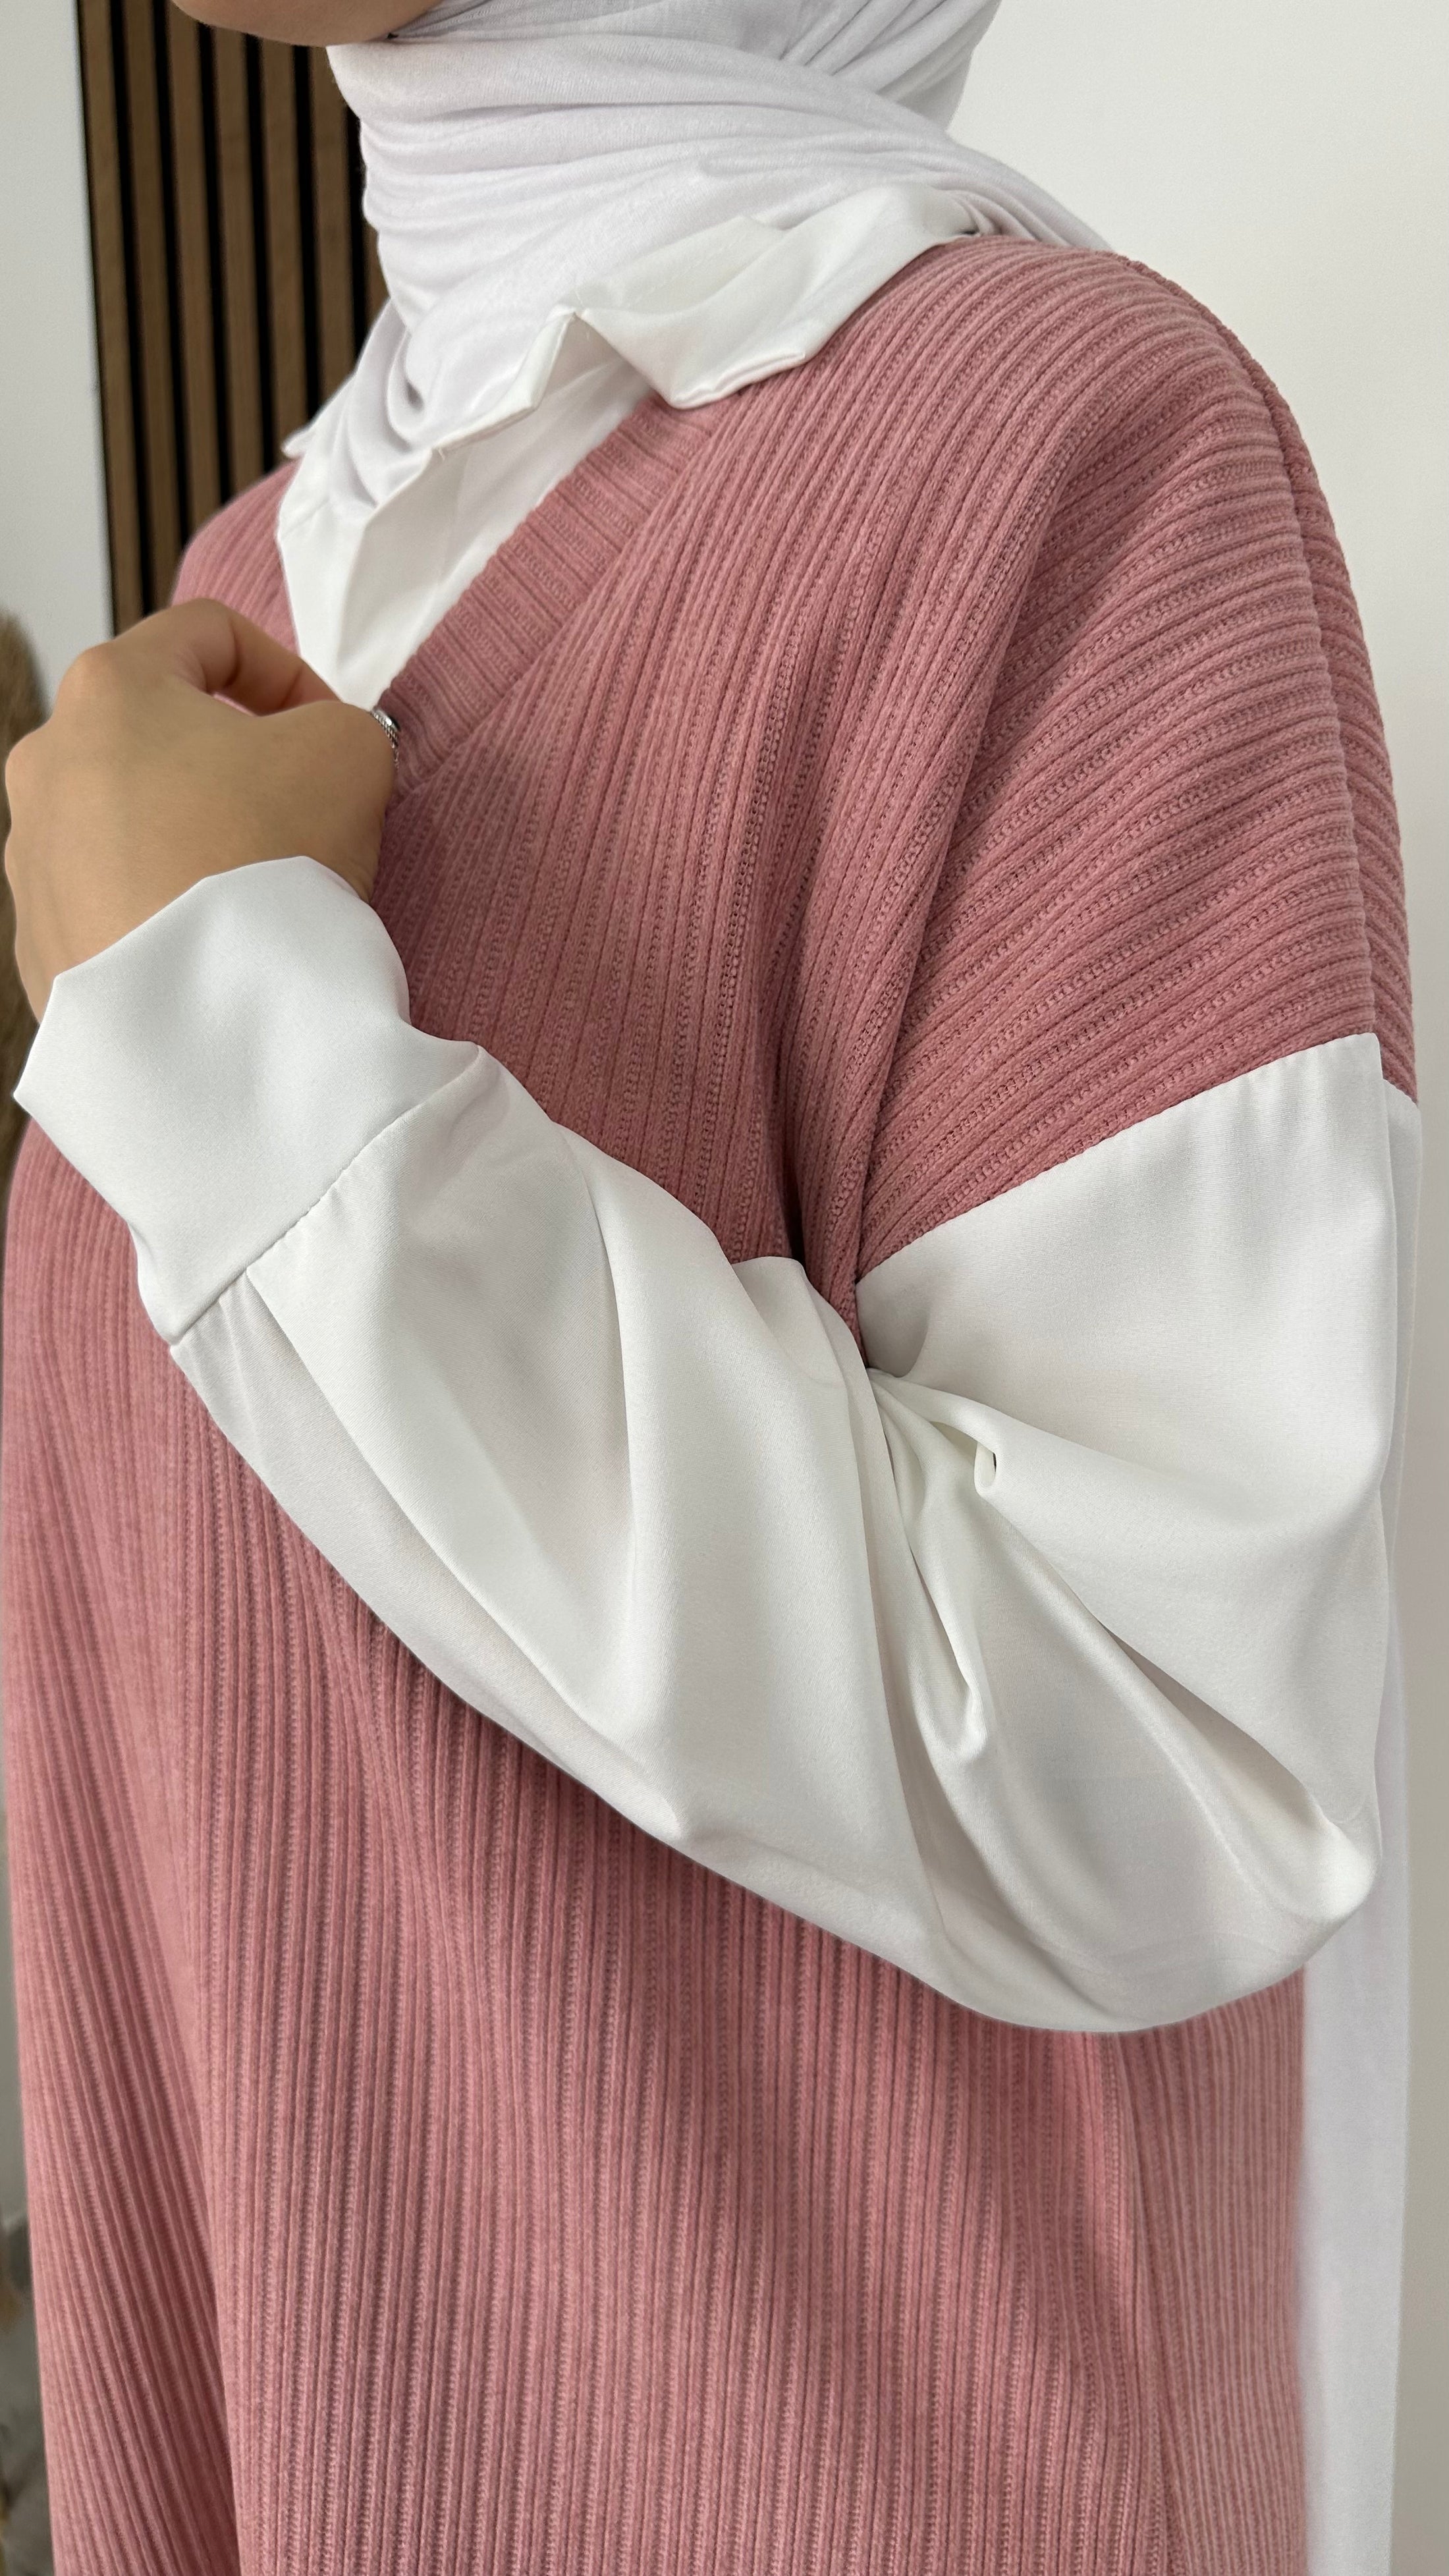 Shirt Dress - Hijab Paradise - Vestito maglione camicia - gilet lungo con camicia - donna musulmana - donna sorridente - dettaglio maniche